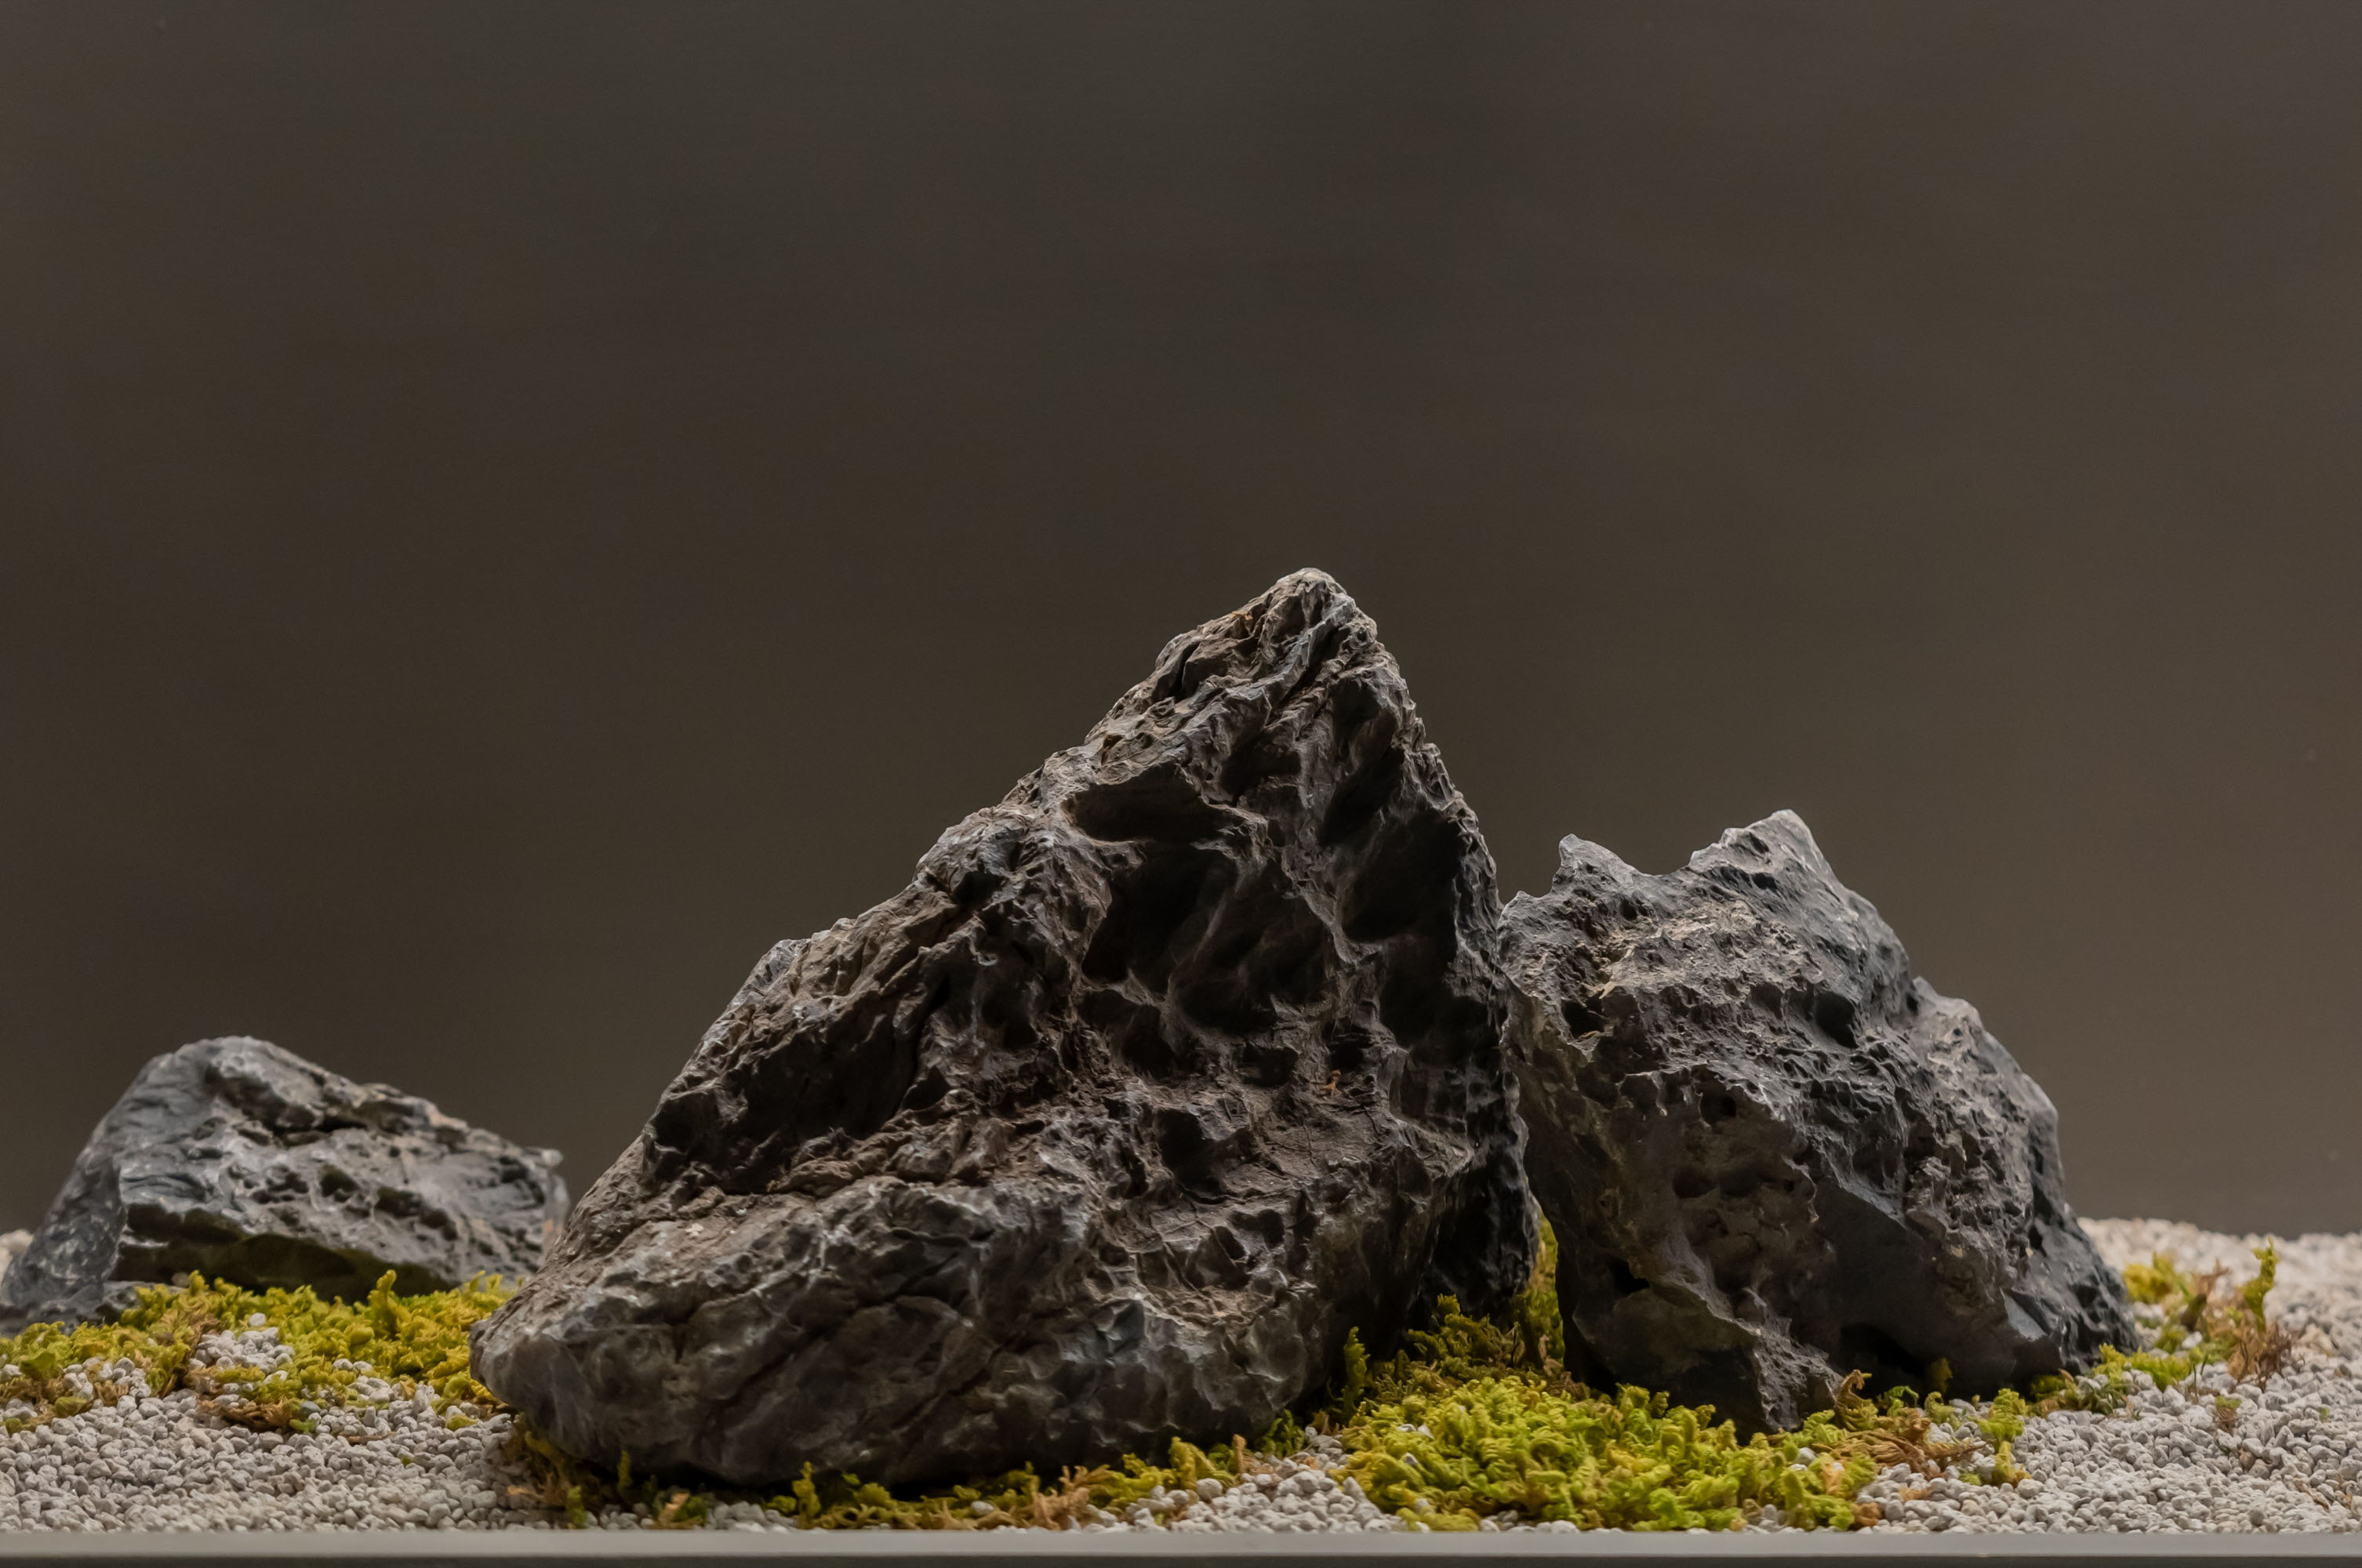 화산석, 이끼, 플랜트박스 조경, 인조조경, 돌, 바위 - 두구루